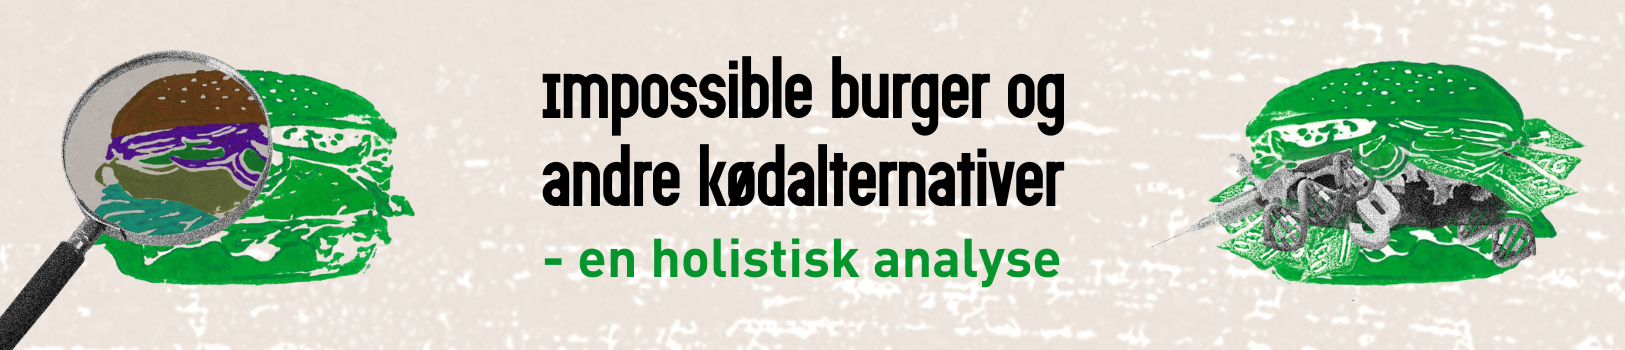 Impossible burger og andre kødalternativer - en holistisk analyse